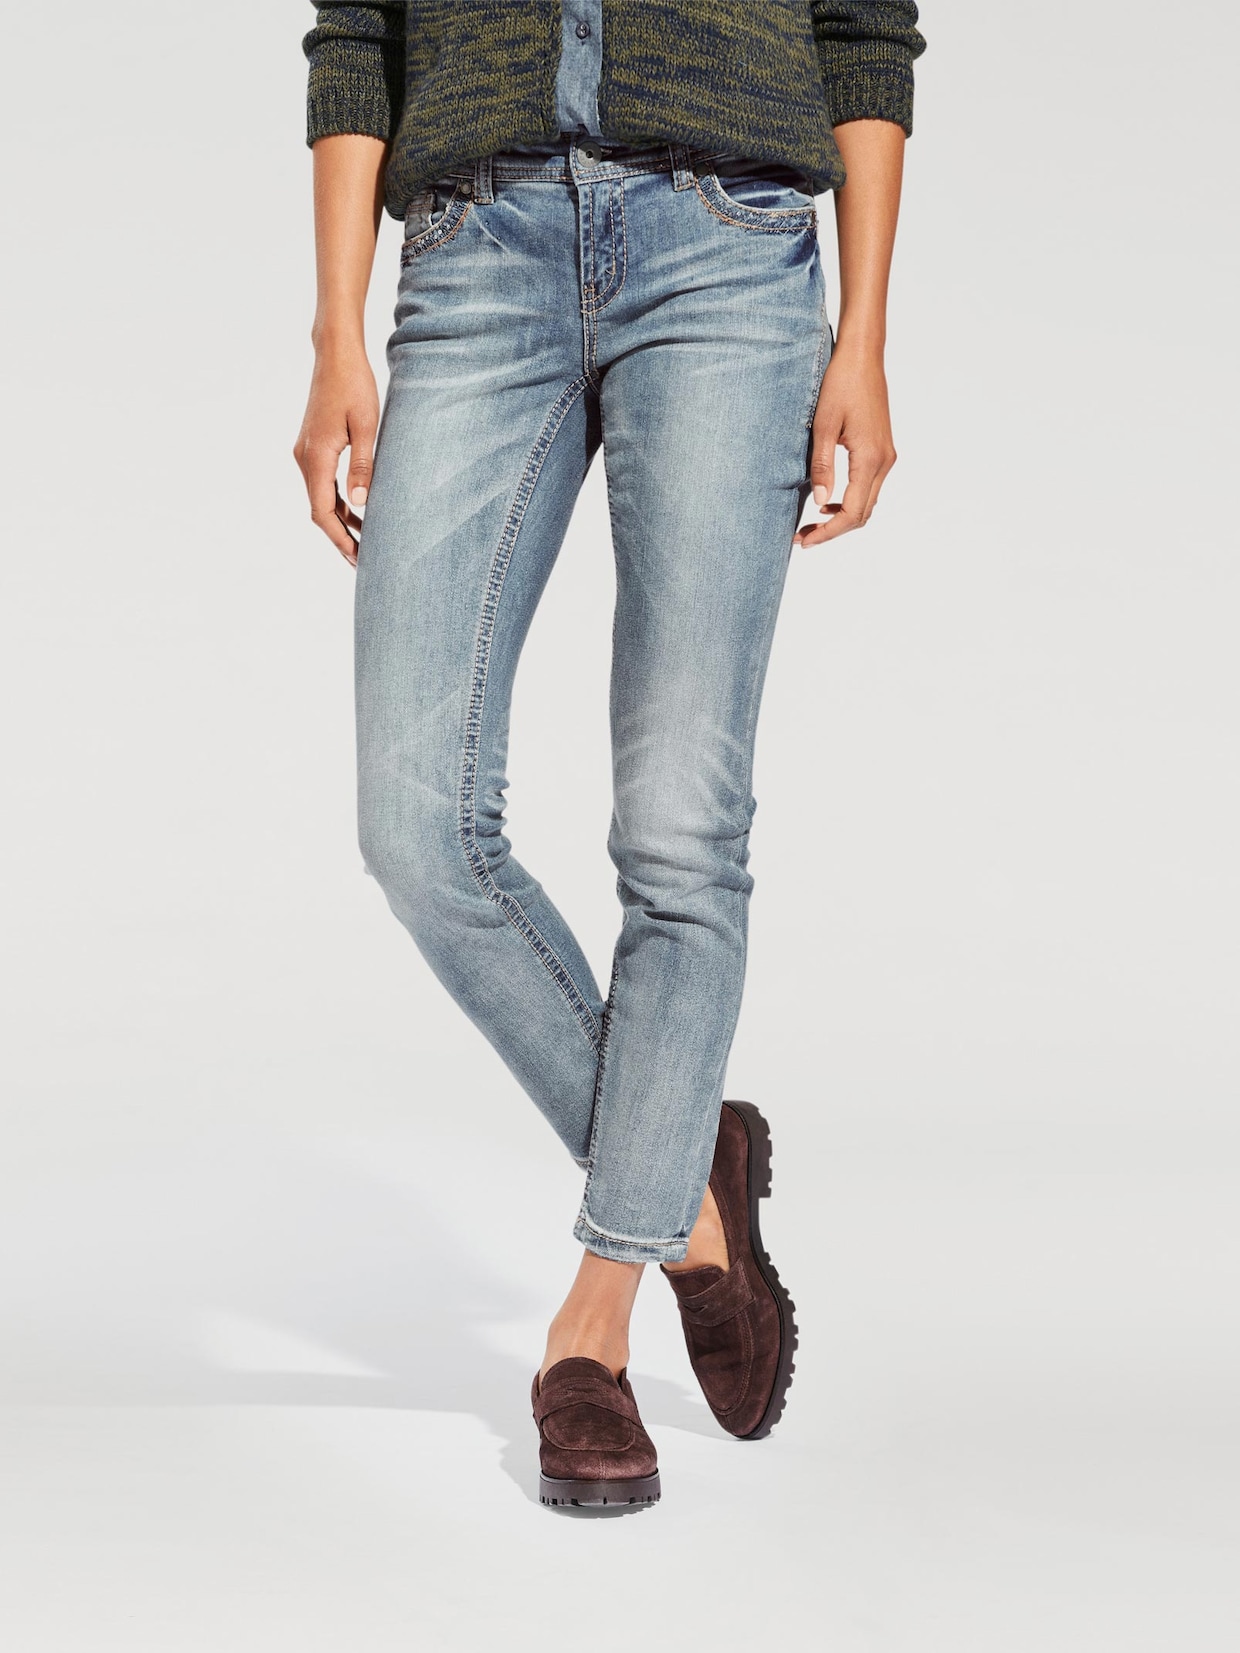 Rick Cardona jeans effet ventre plat - délavé